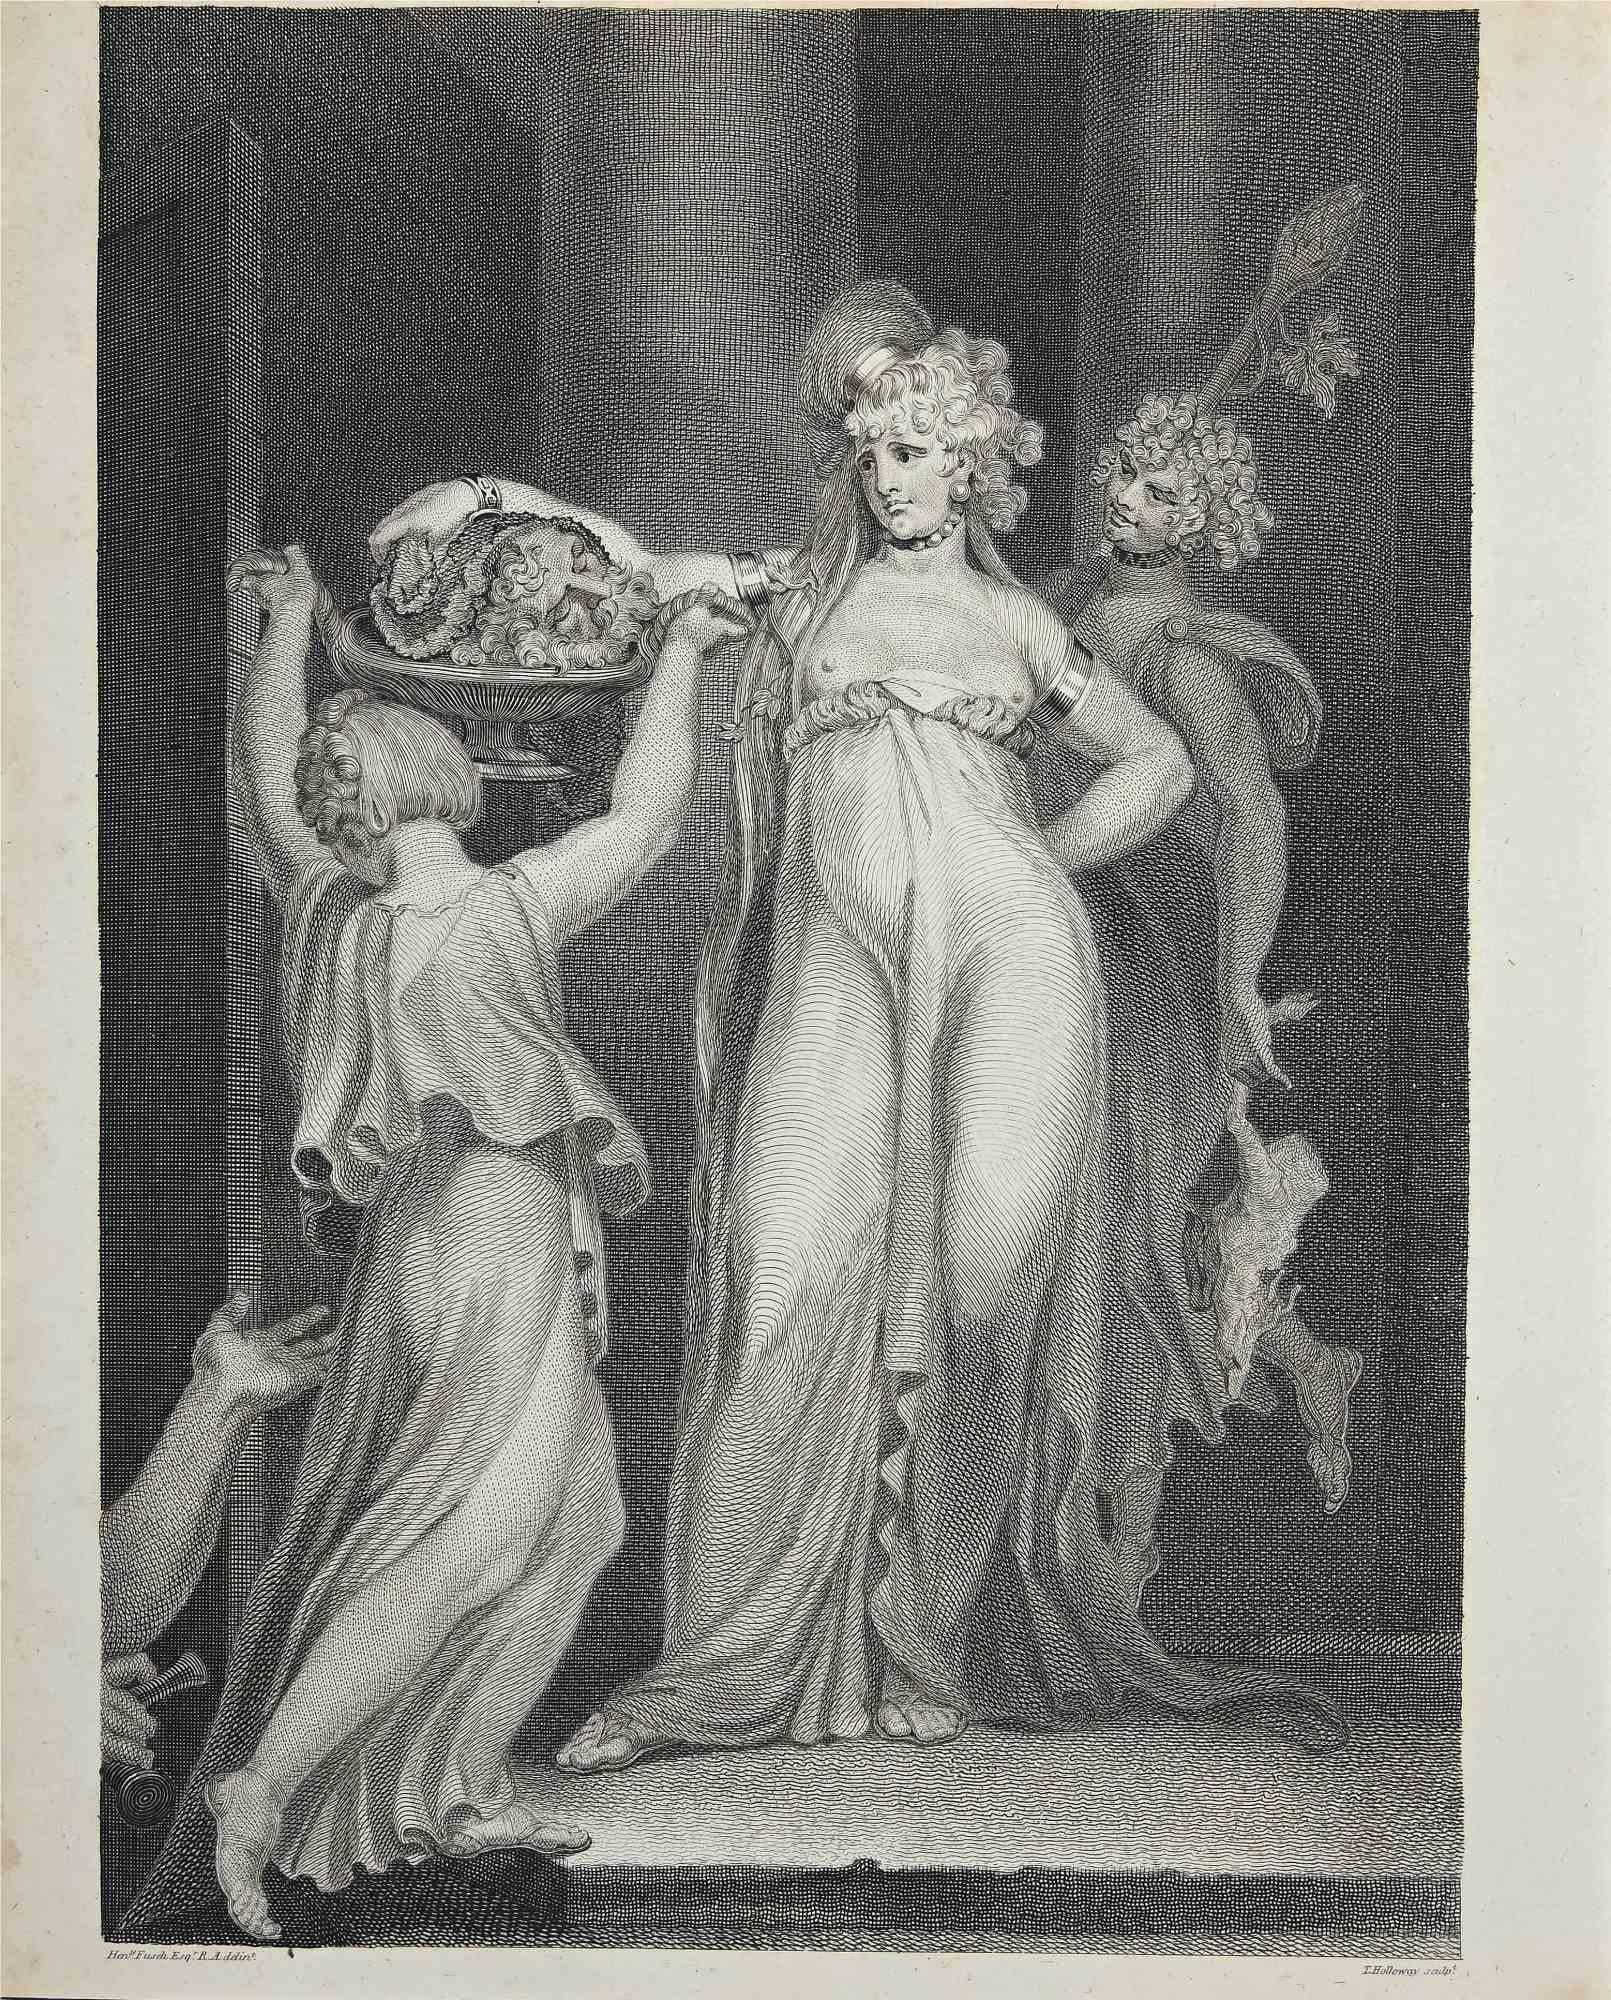 Salomé ist eine Original-Radierung auf Papier von Thomas Holloway nach H. Fussli aus dem Jahr 1810.

Gute Bedingungen.

Das Kunstwerk wird durch starke Pinselstriche in einer ausgewogenen Komposition dargestellt.